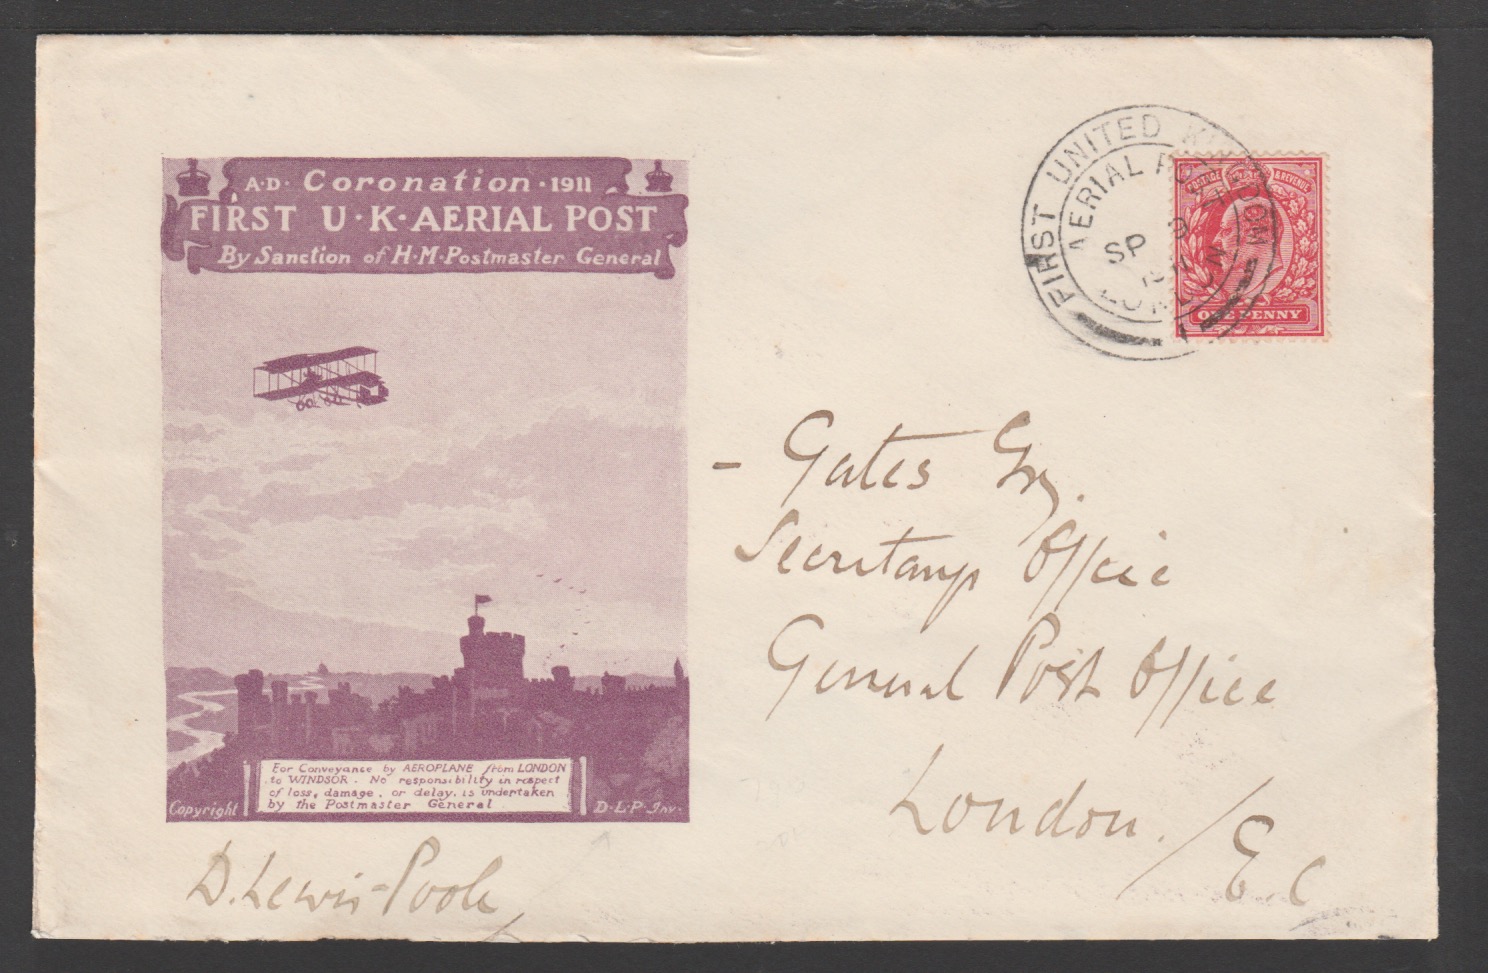 G.B. - FIRST U.K AERIAL POST 1911 (Sep. 9) Violet 'Privilege Mail' envelope franked KEVII 1d, fl... - Image 3 of 3